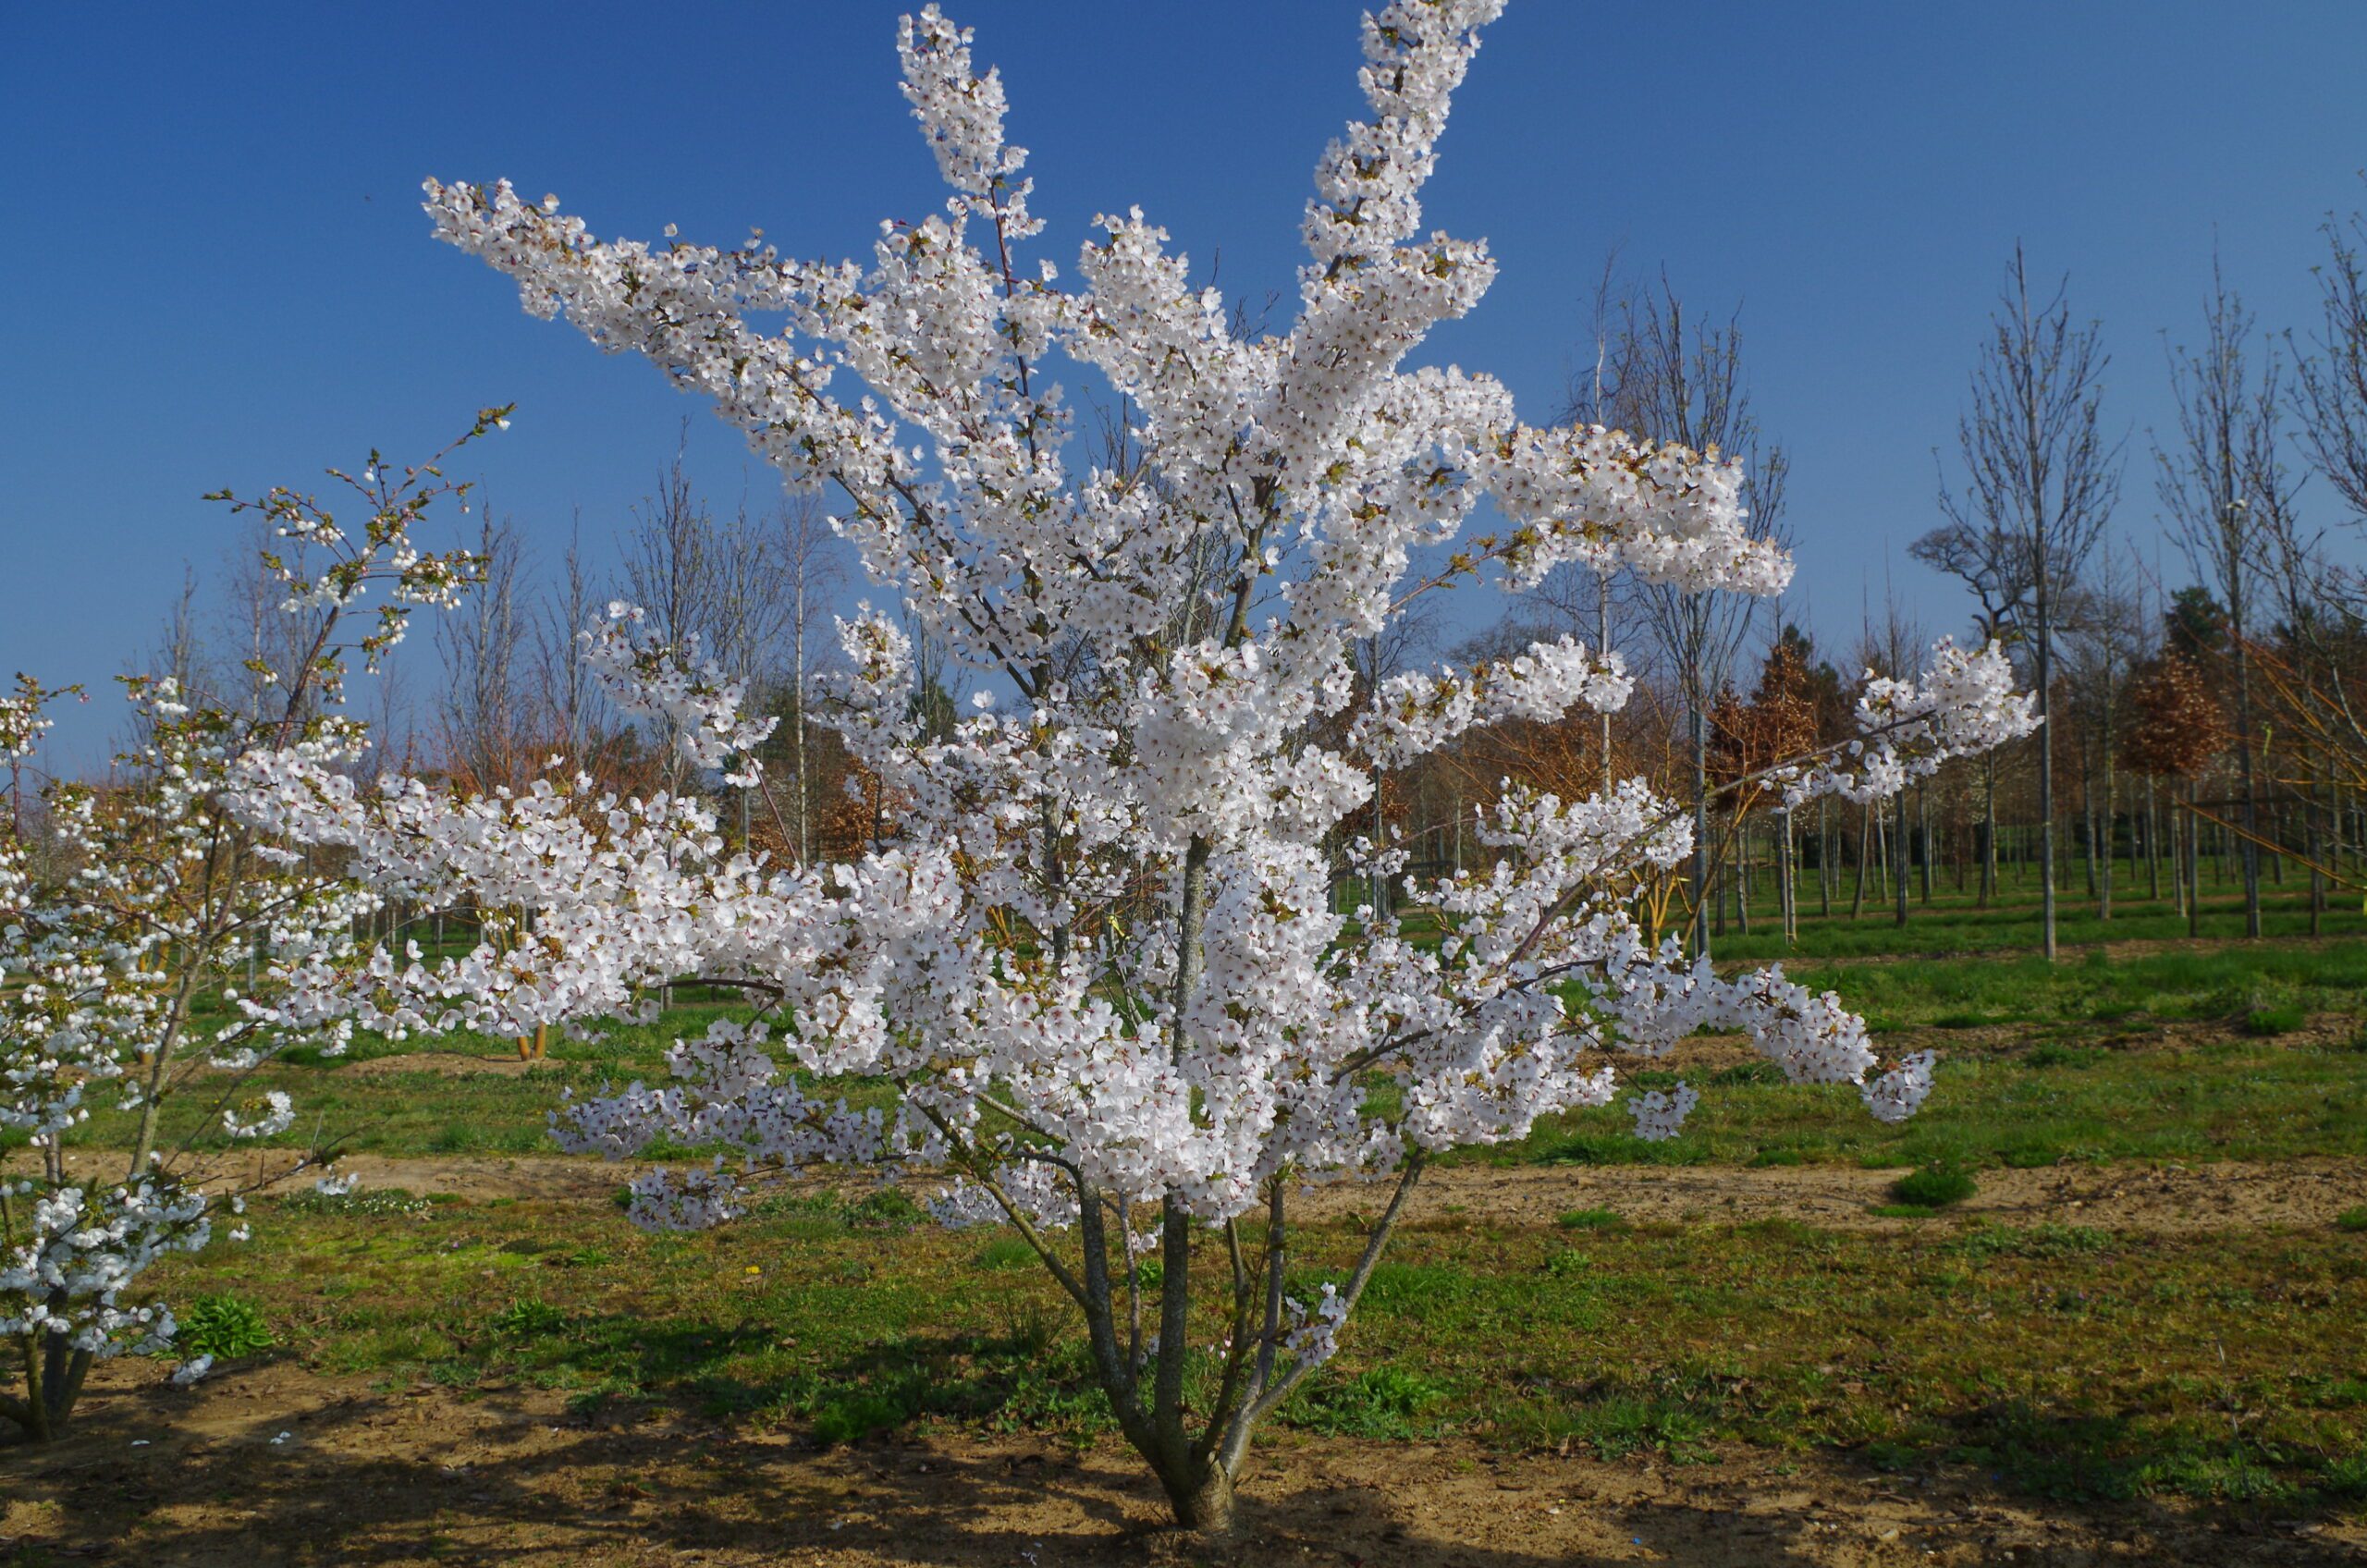 Prunus yedoensis multi stem tree with white flower blossom growing in field